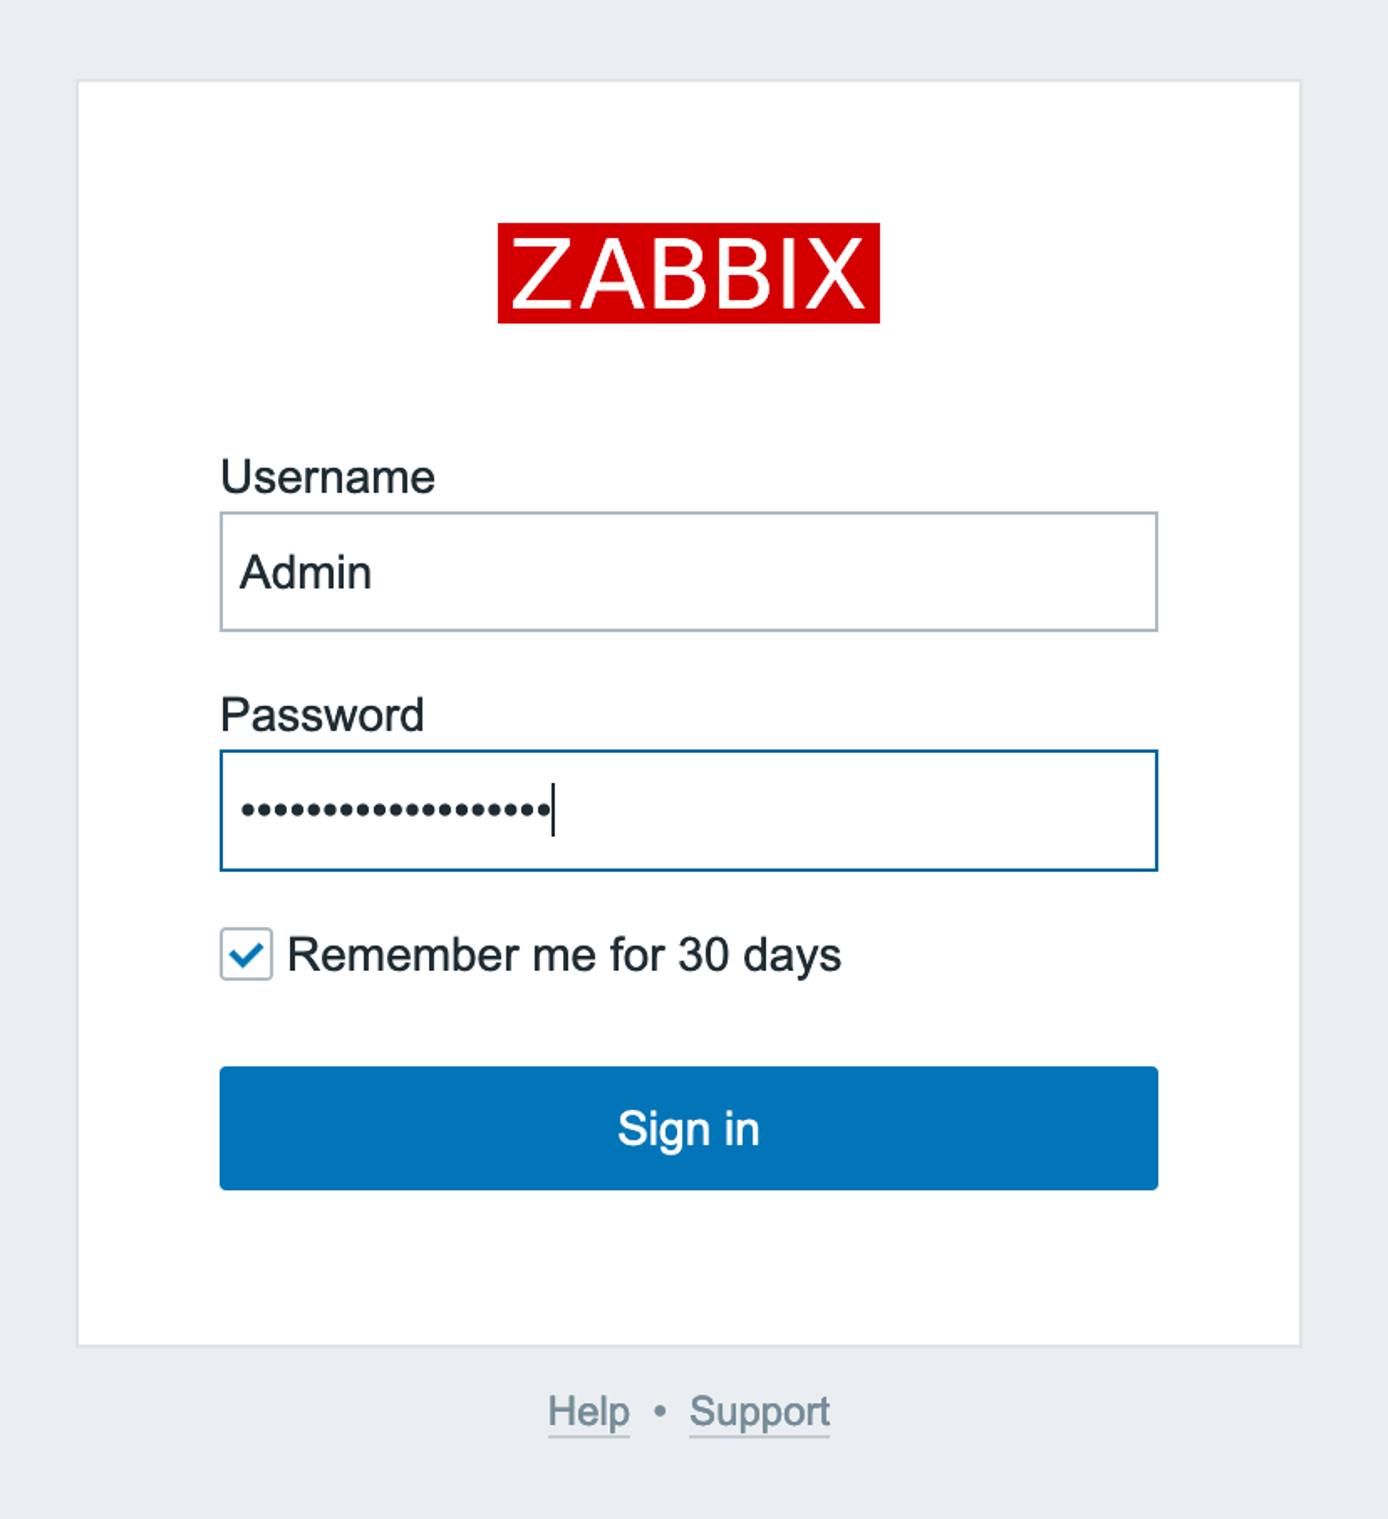 A screenshot of the Zabbix log in prompt